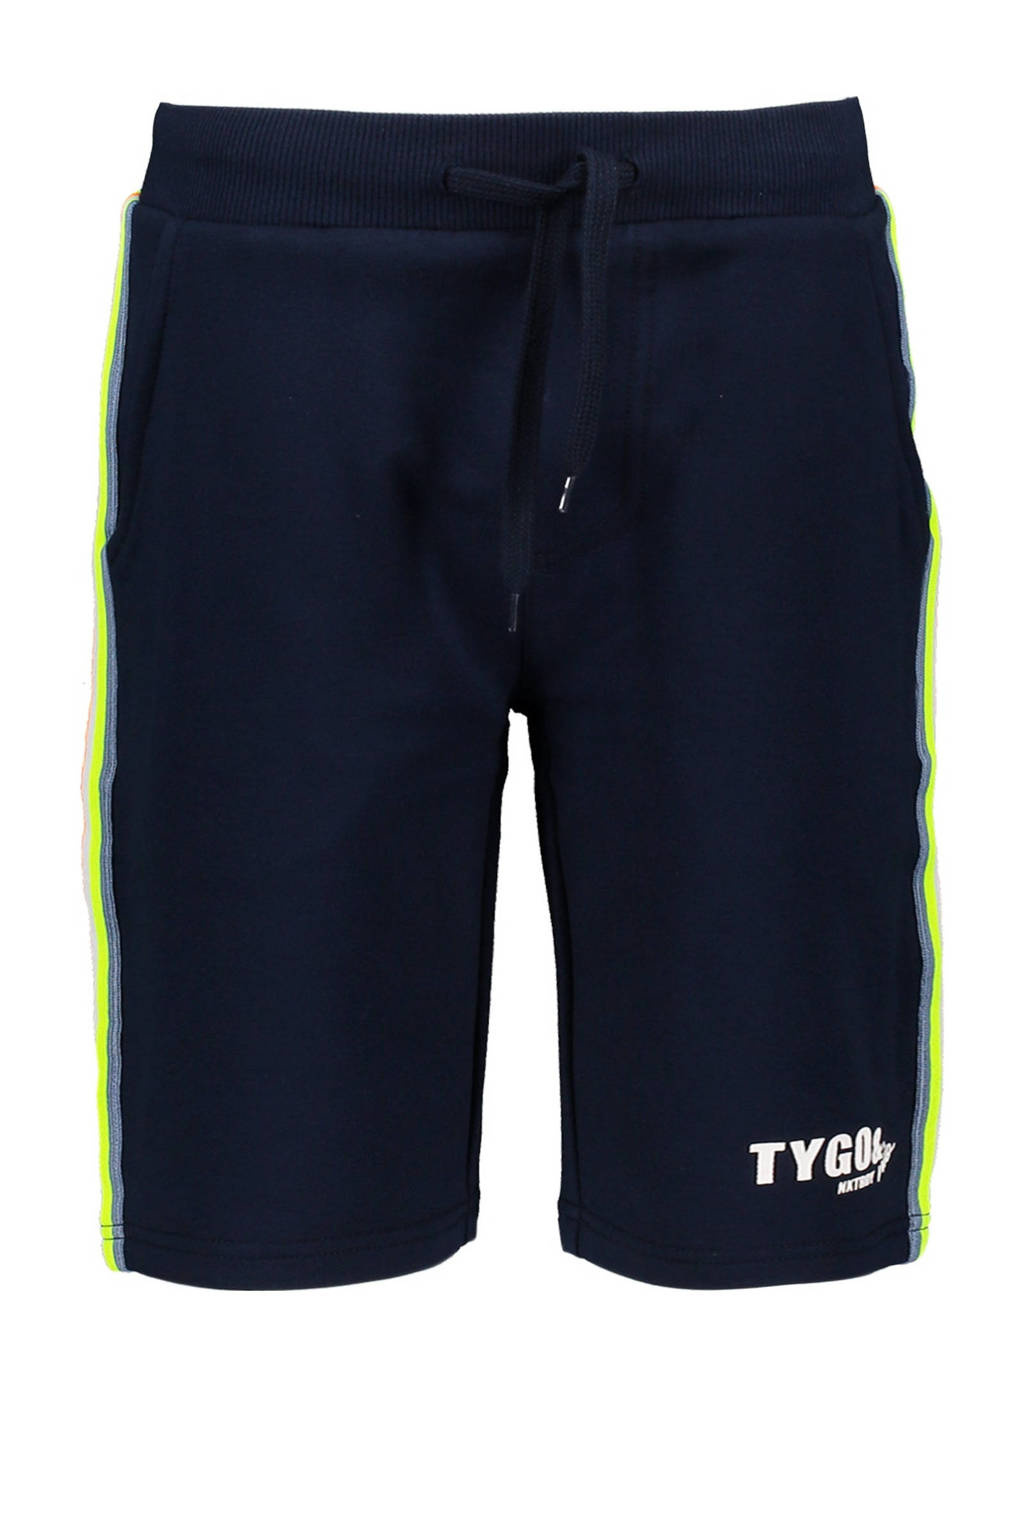 Donkerblauw en gele jongens TYGO & vito slim fit sweatshort van stretchkatoen met regular waist en tekst print